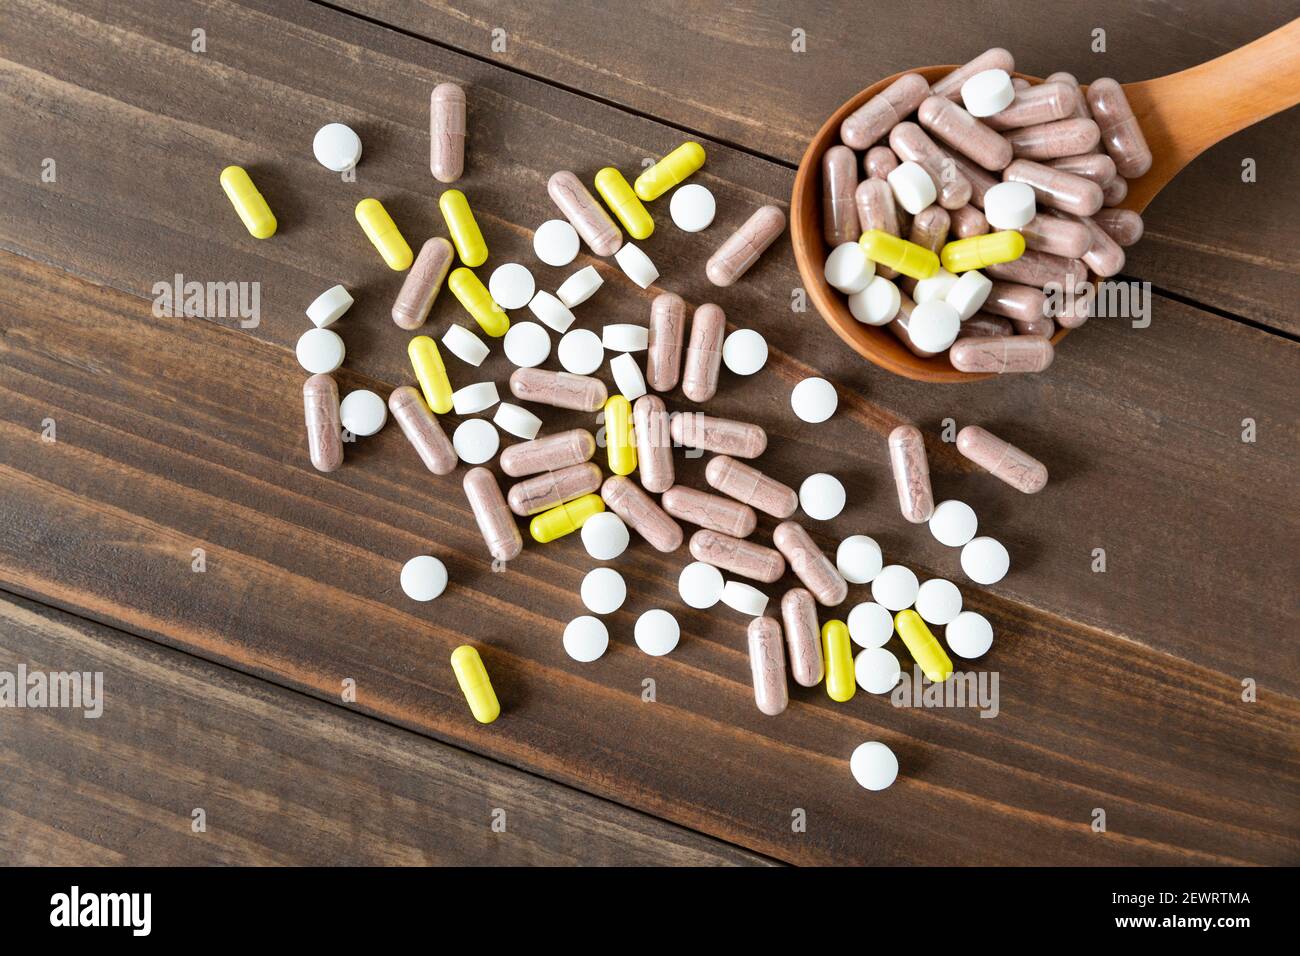 Vista superior de un surtido de píldoras, tabletas y cápsulas de medicina farmacéutica sobre un fondo de madera oscura. Foto de stock